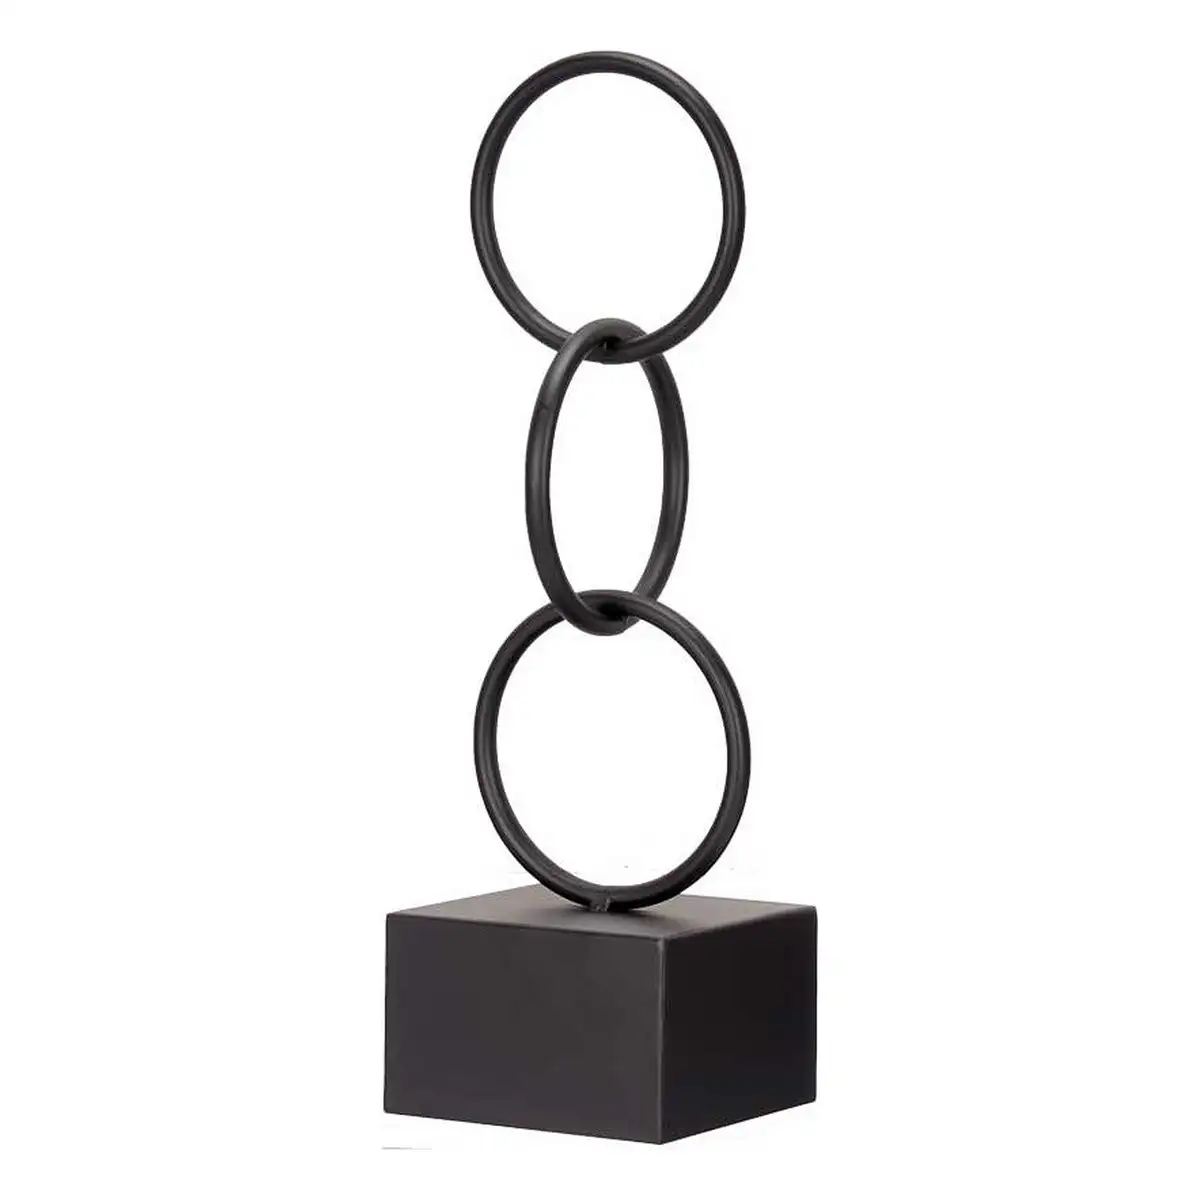 Figurine decorative anneaux noir metal 12 5 x 40 5 x 12 5 cm _1925. DIAYTAR SENEGAL - L'Art de Magasiner sans Limites. Naviguez à travers notre collection diversifiée pour trouver des produits qui élargiront vos horizons shopping.